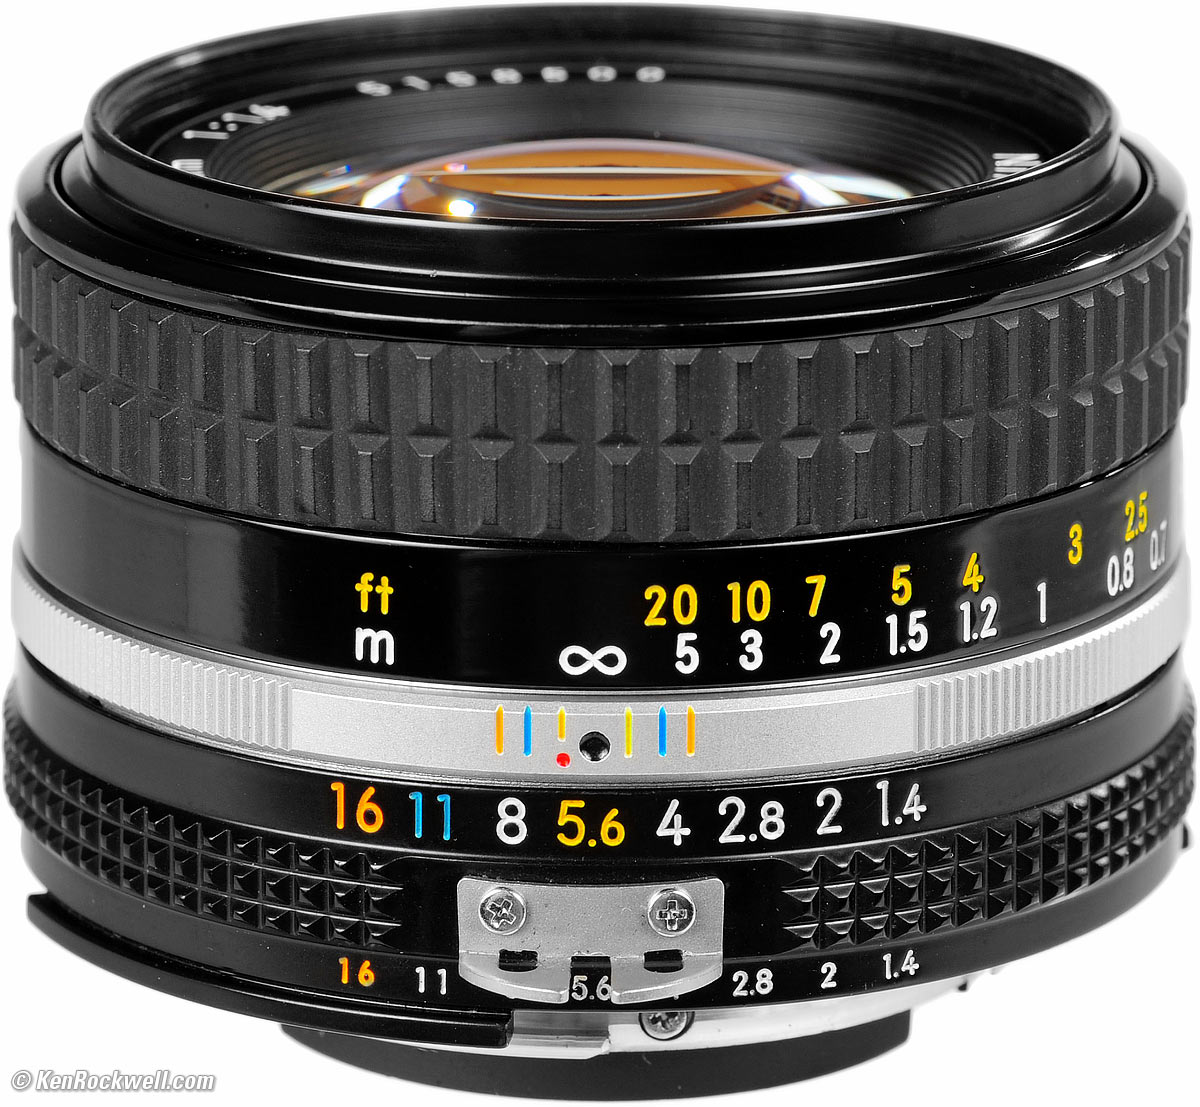 カメラ レンズ(単焦点) Nikon NIKKOR 50mm f/1.4 AI-s Review & Sample Images by Ken Rockwell